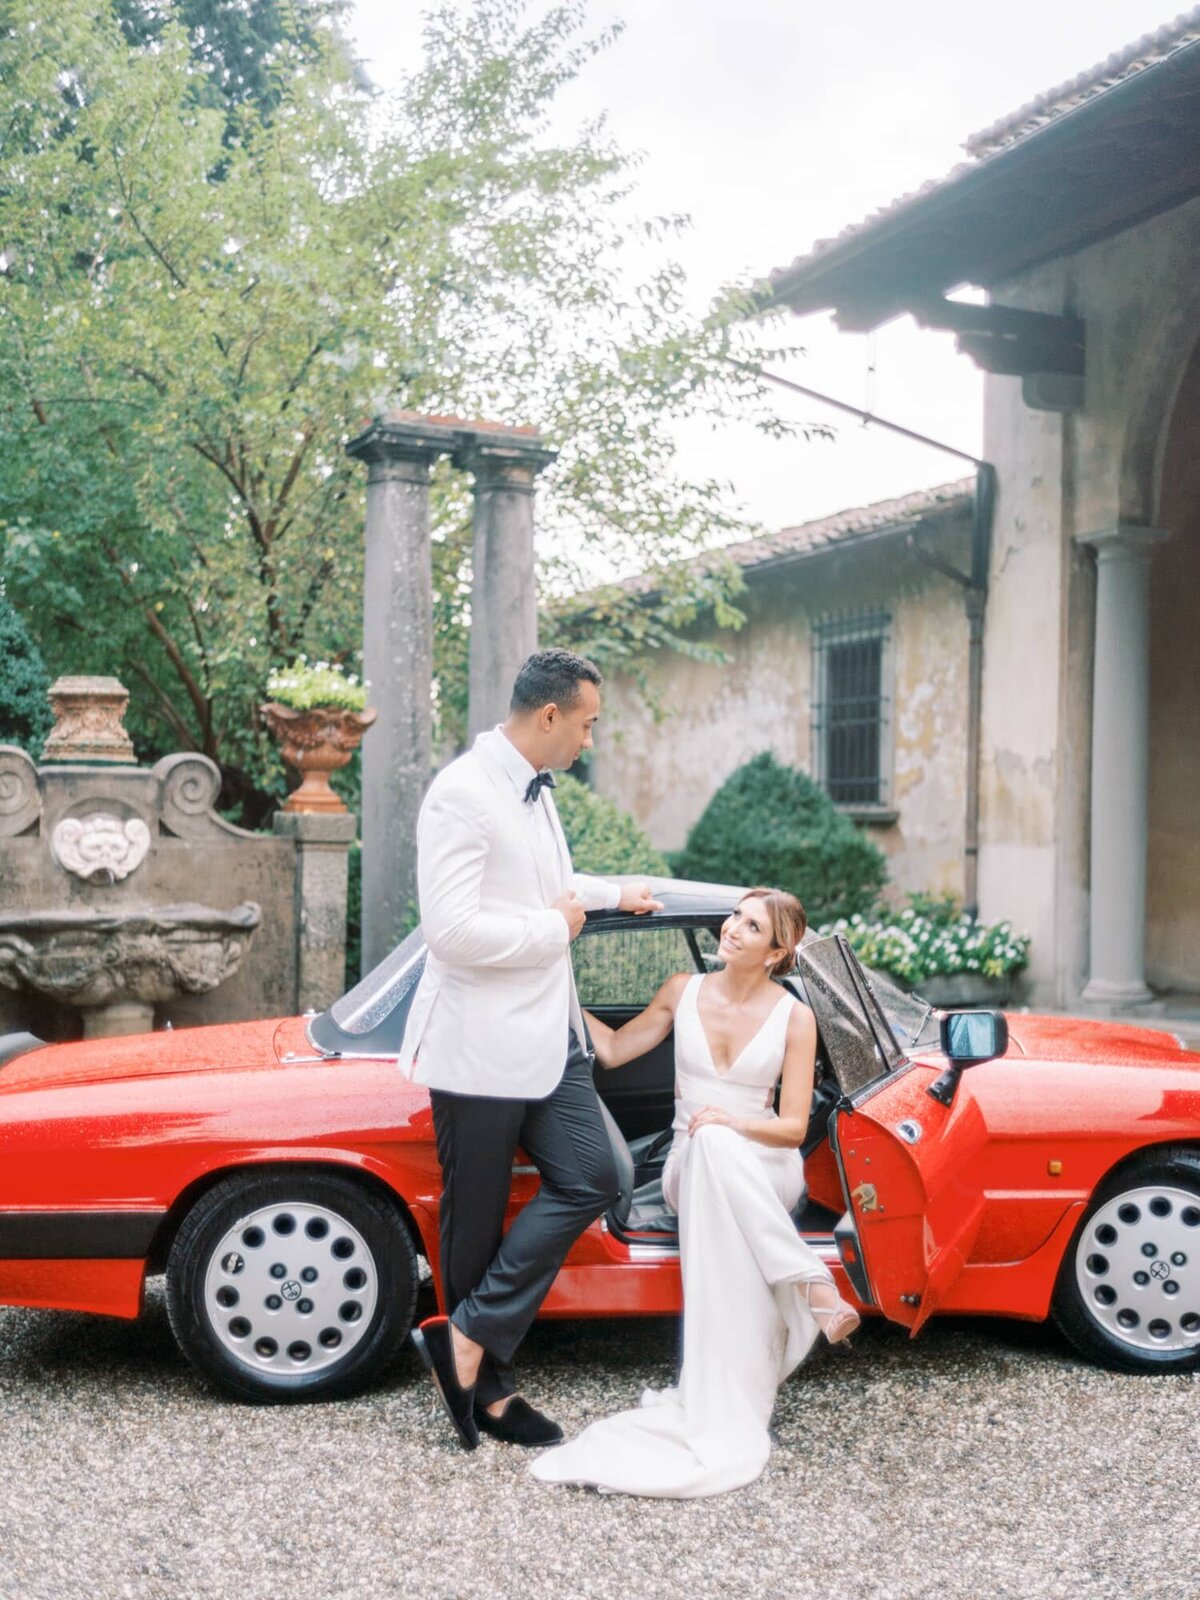 AndreasKGeorgiou-Tuscany-wedding-Italy-66